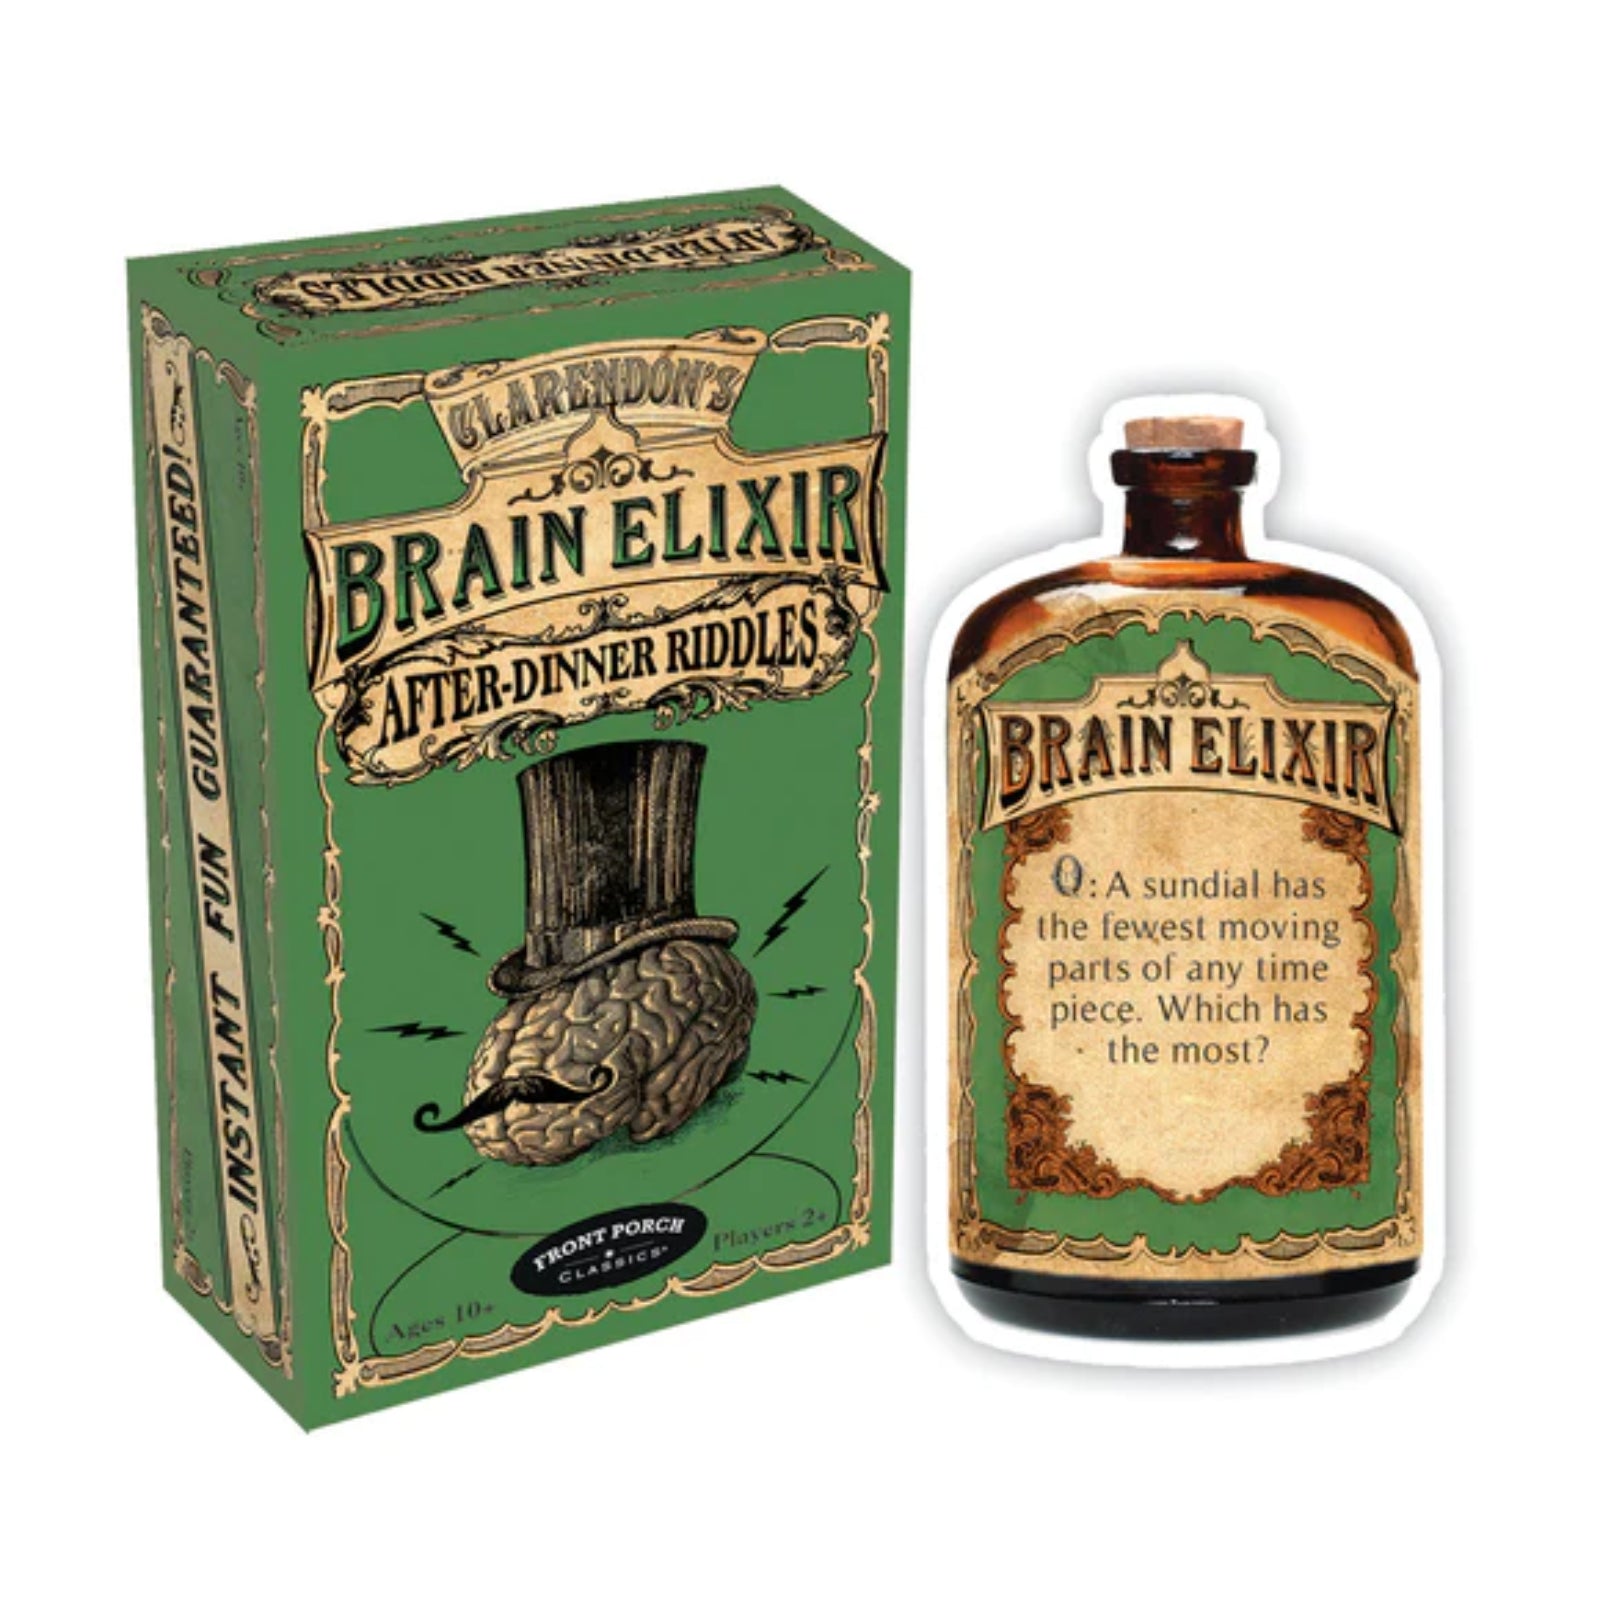 Claredon's Brain Elixir - After-Dinner Riddles